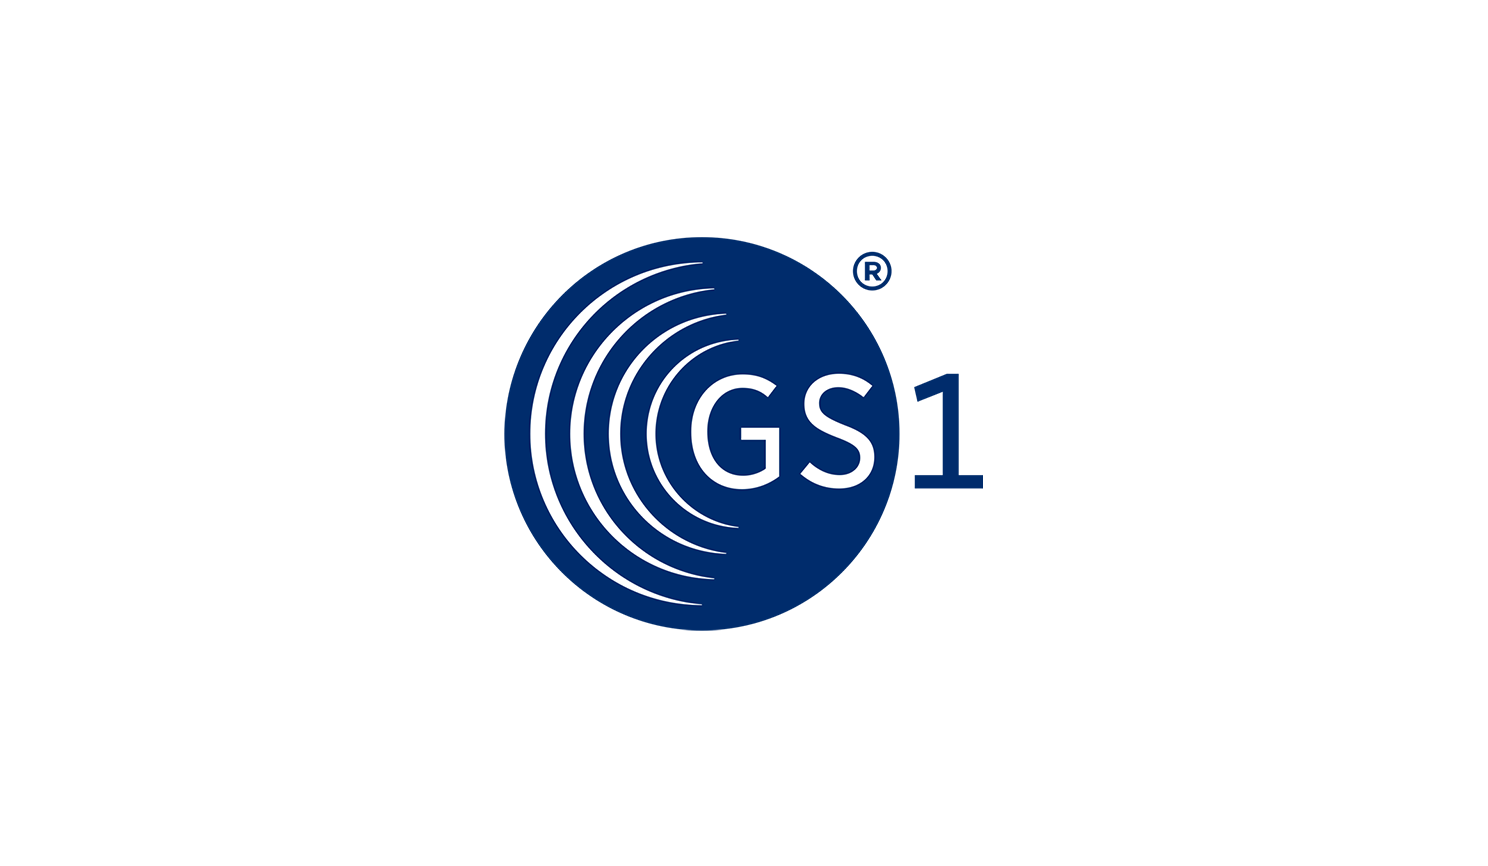 Https srs gs1ru org. ЮНИСКАН/гс1 рус. ГС-1. Gs1. Логотип gs1.